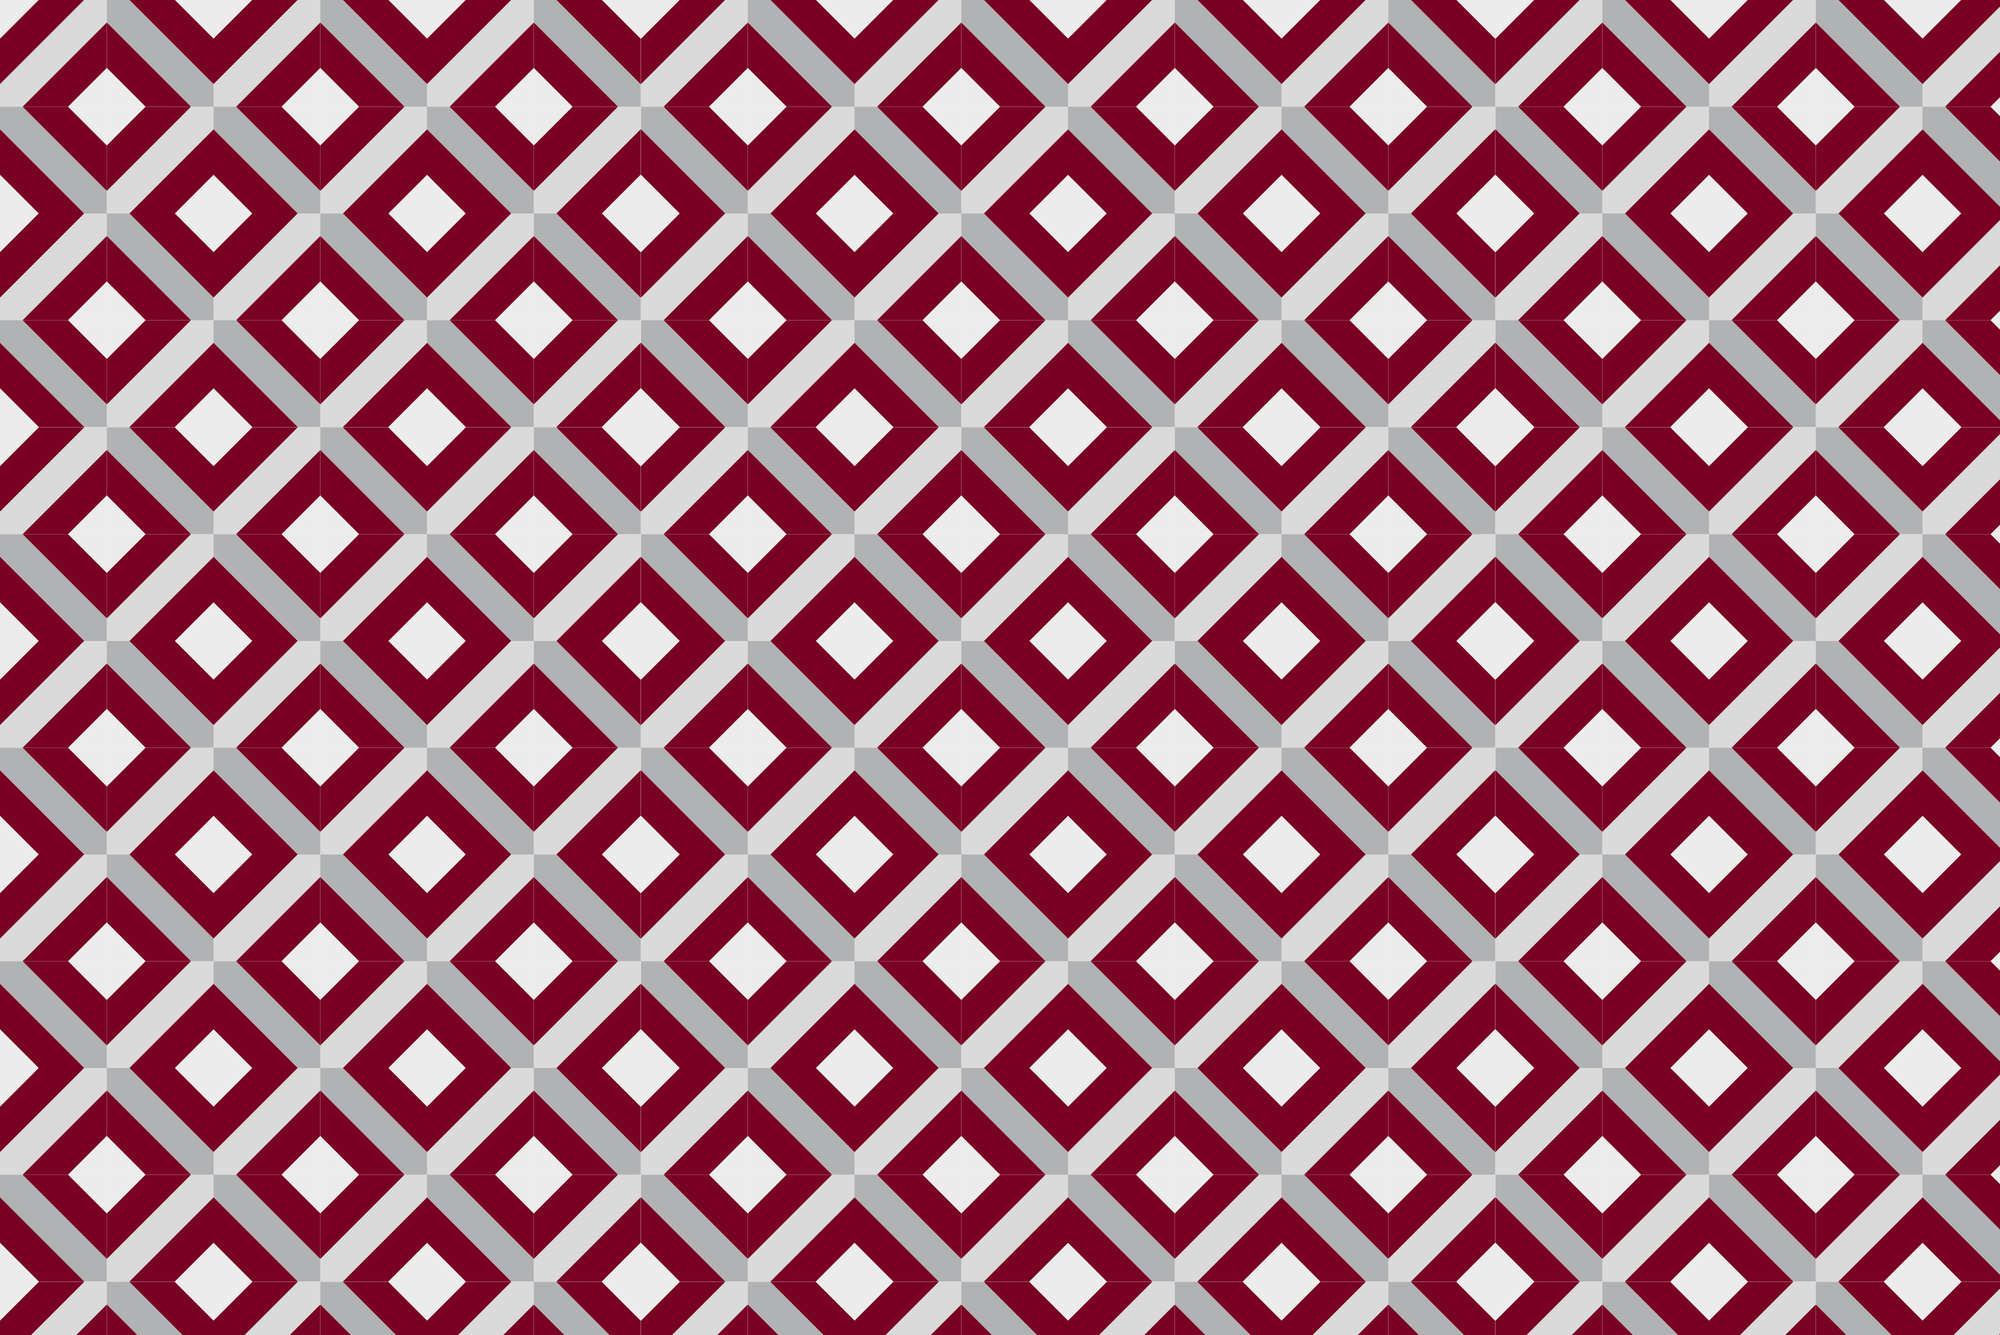             Designbehang doosmotief met kleine vierkantjes rood op mat glad vlies
        